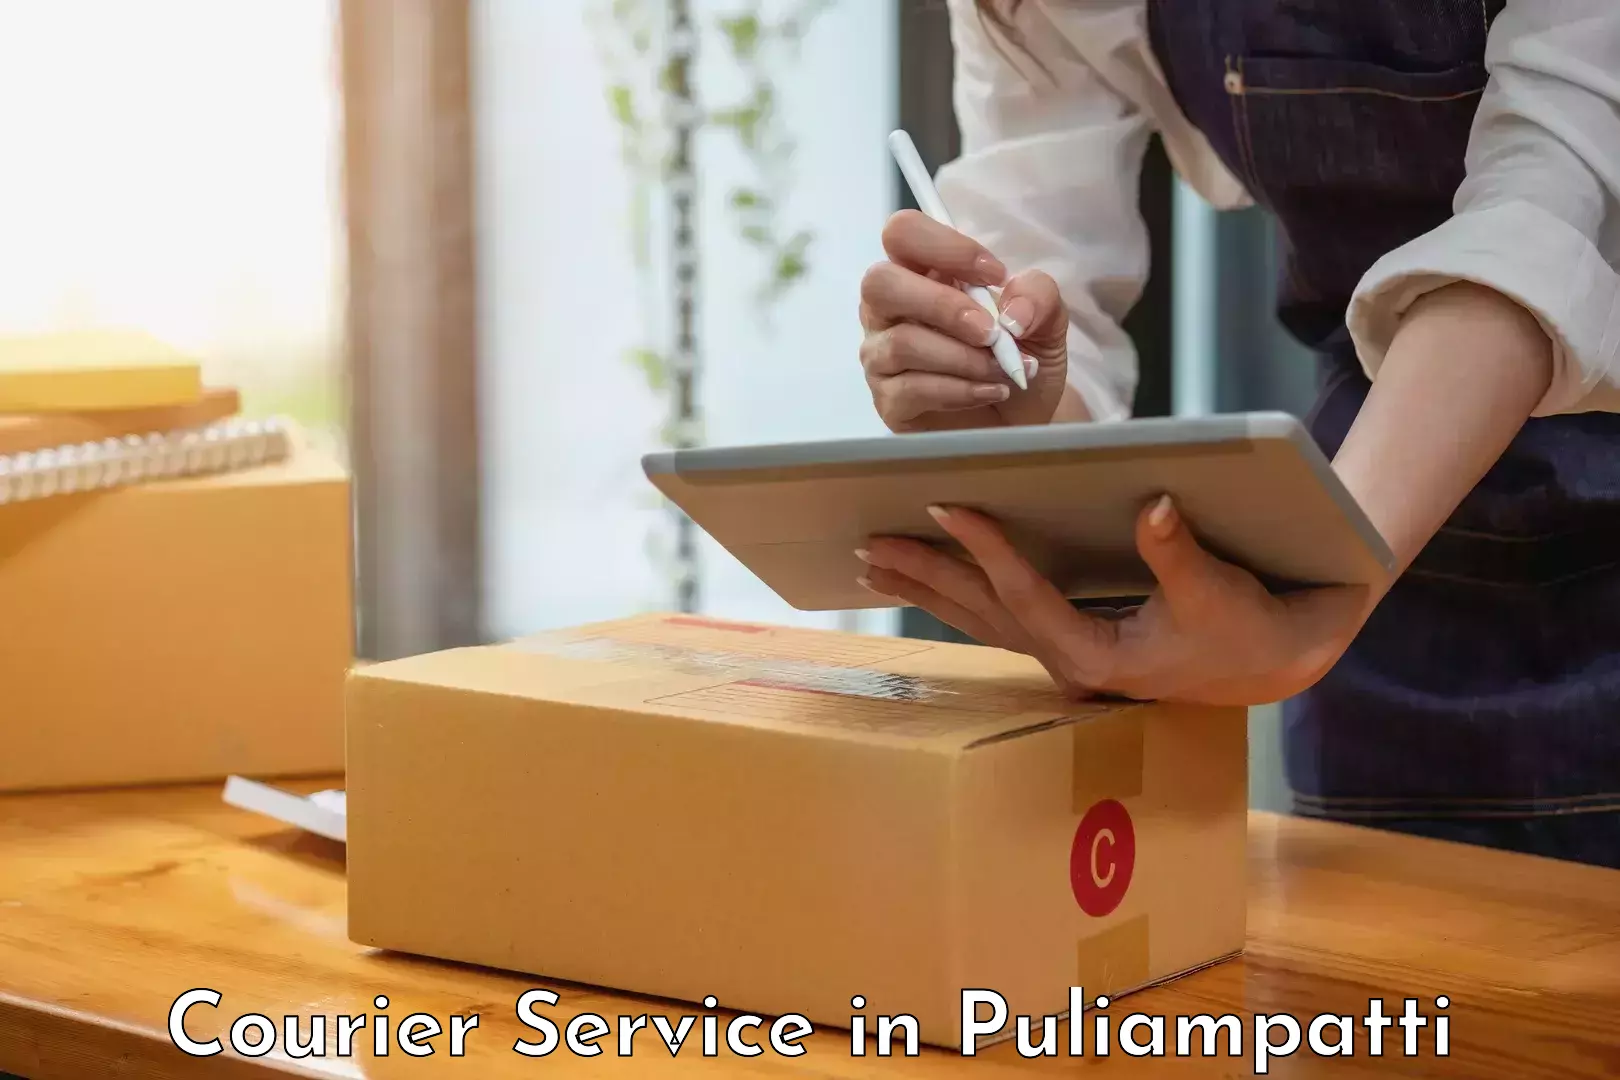 Professional courier services in Puliampatti